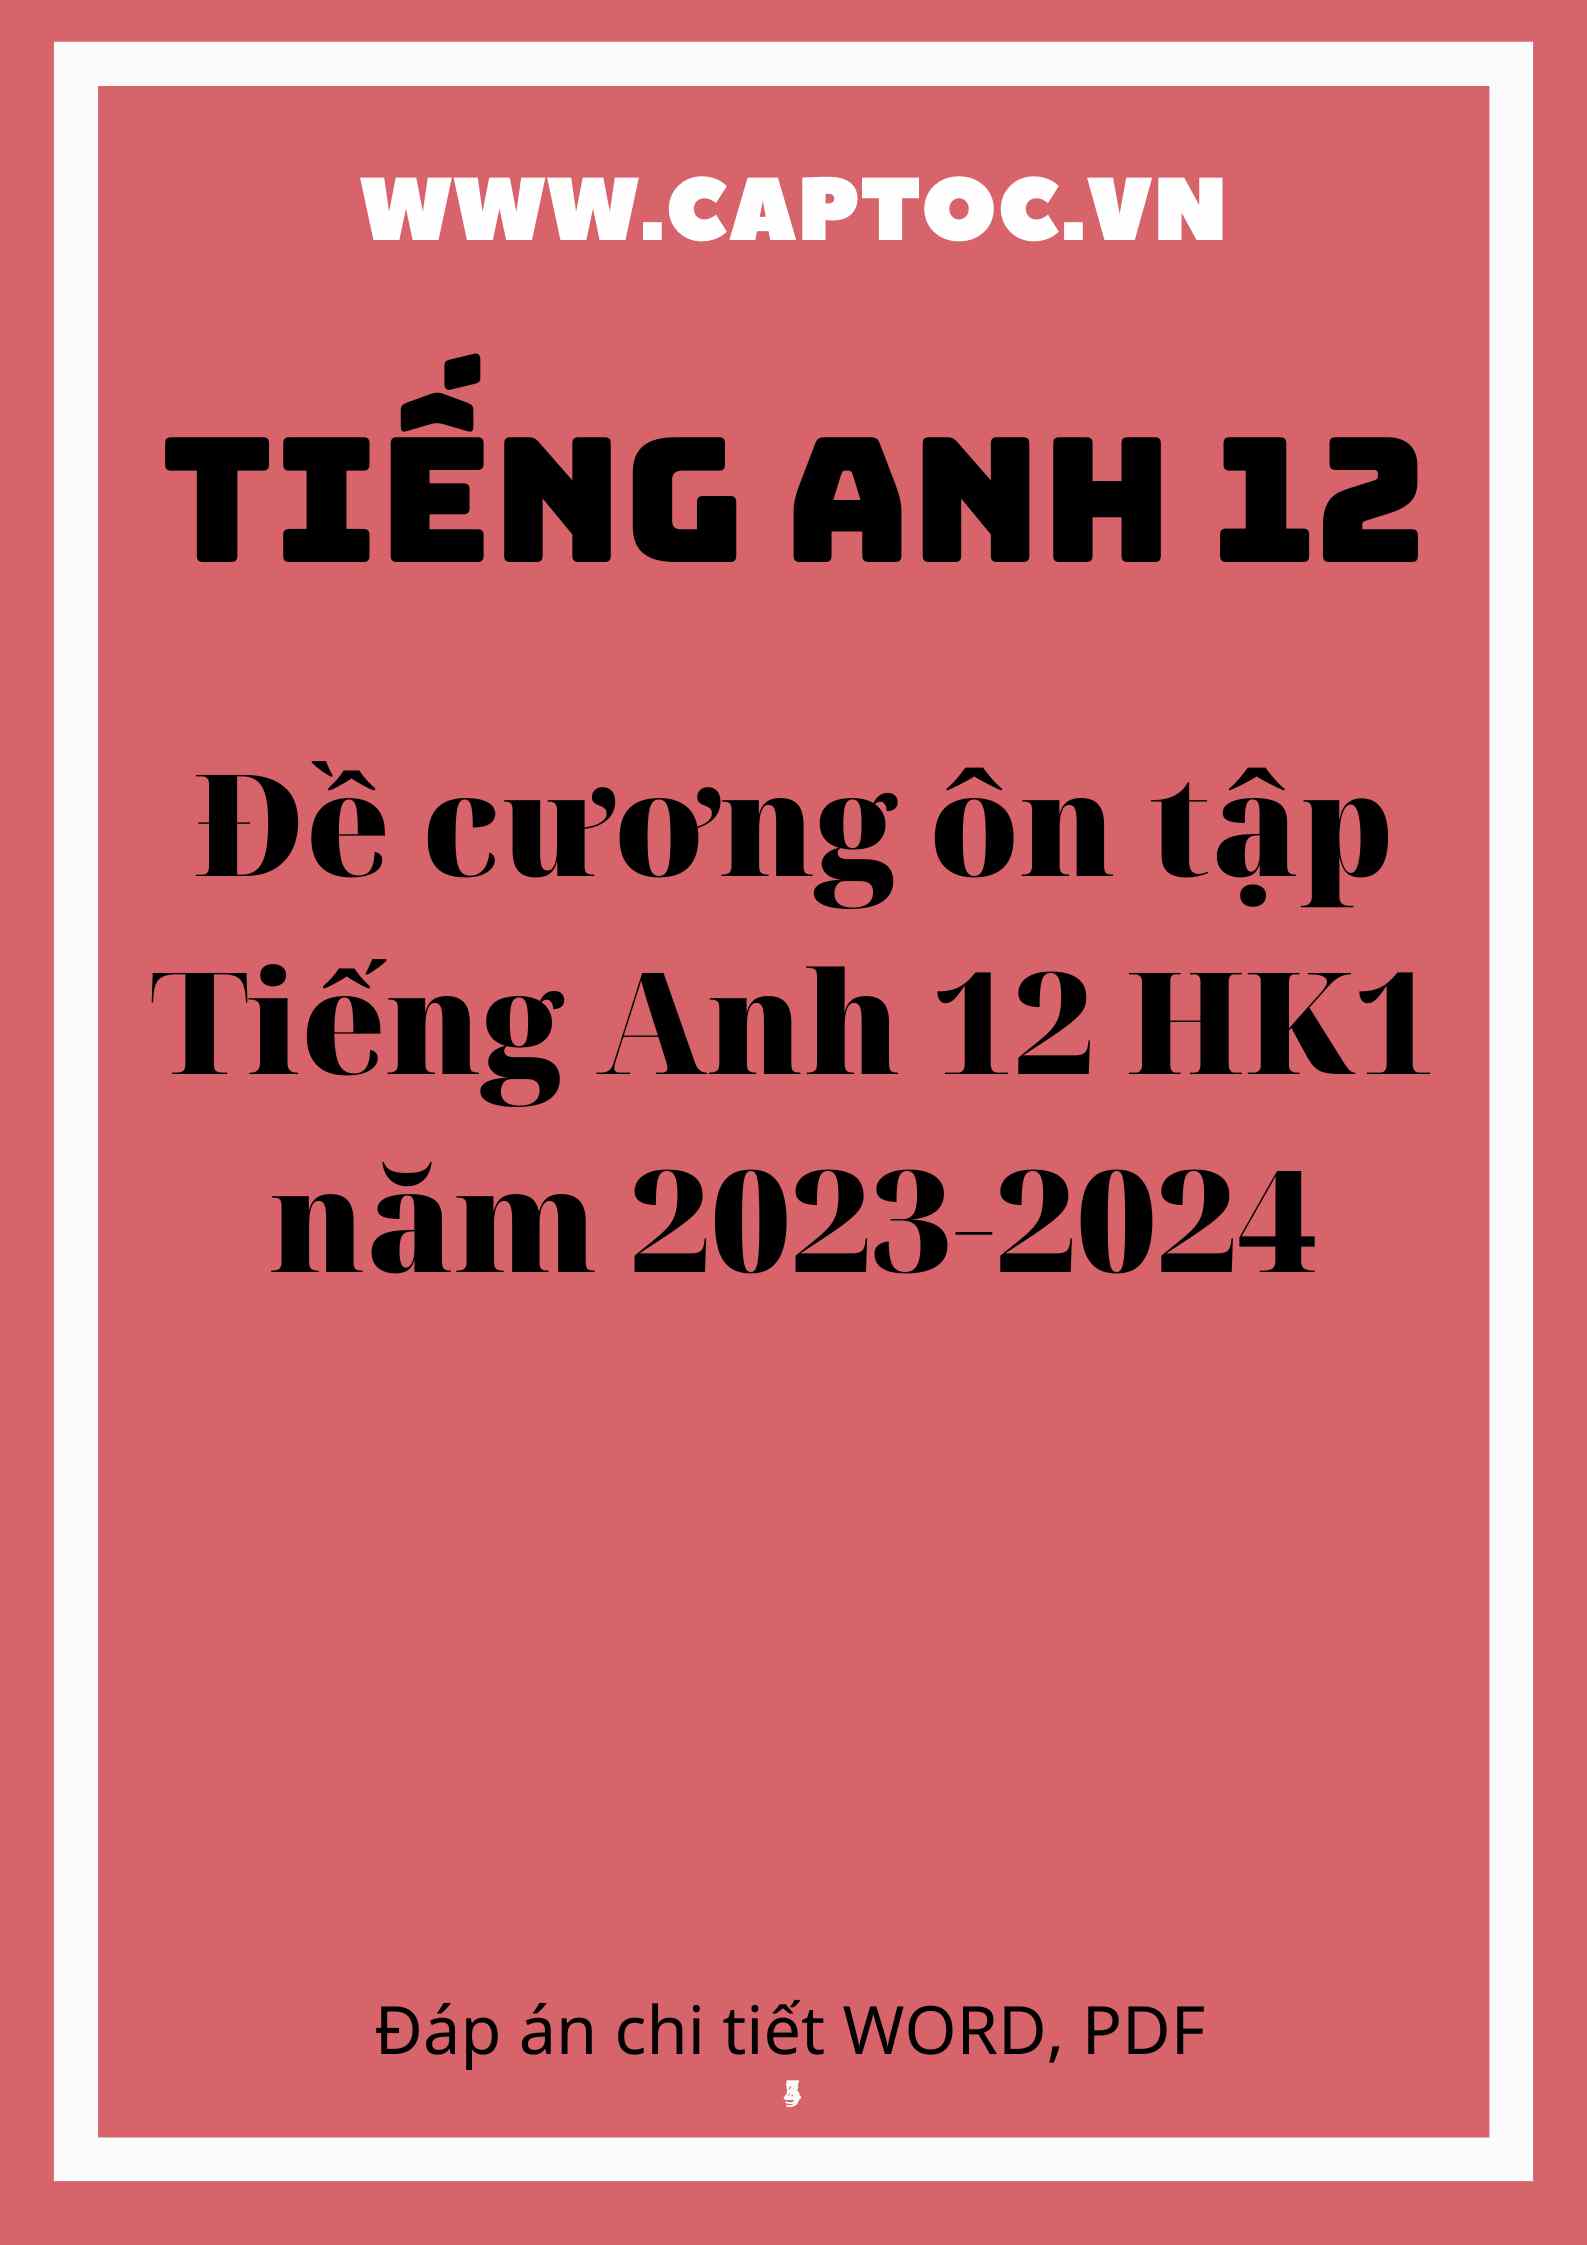 Đề cương ôn tập Tiếng Anh 12 HK1 năm 2023-2024